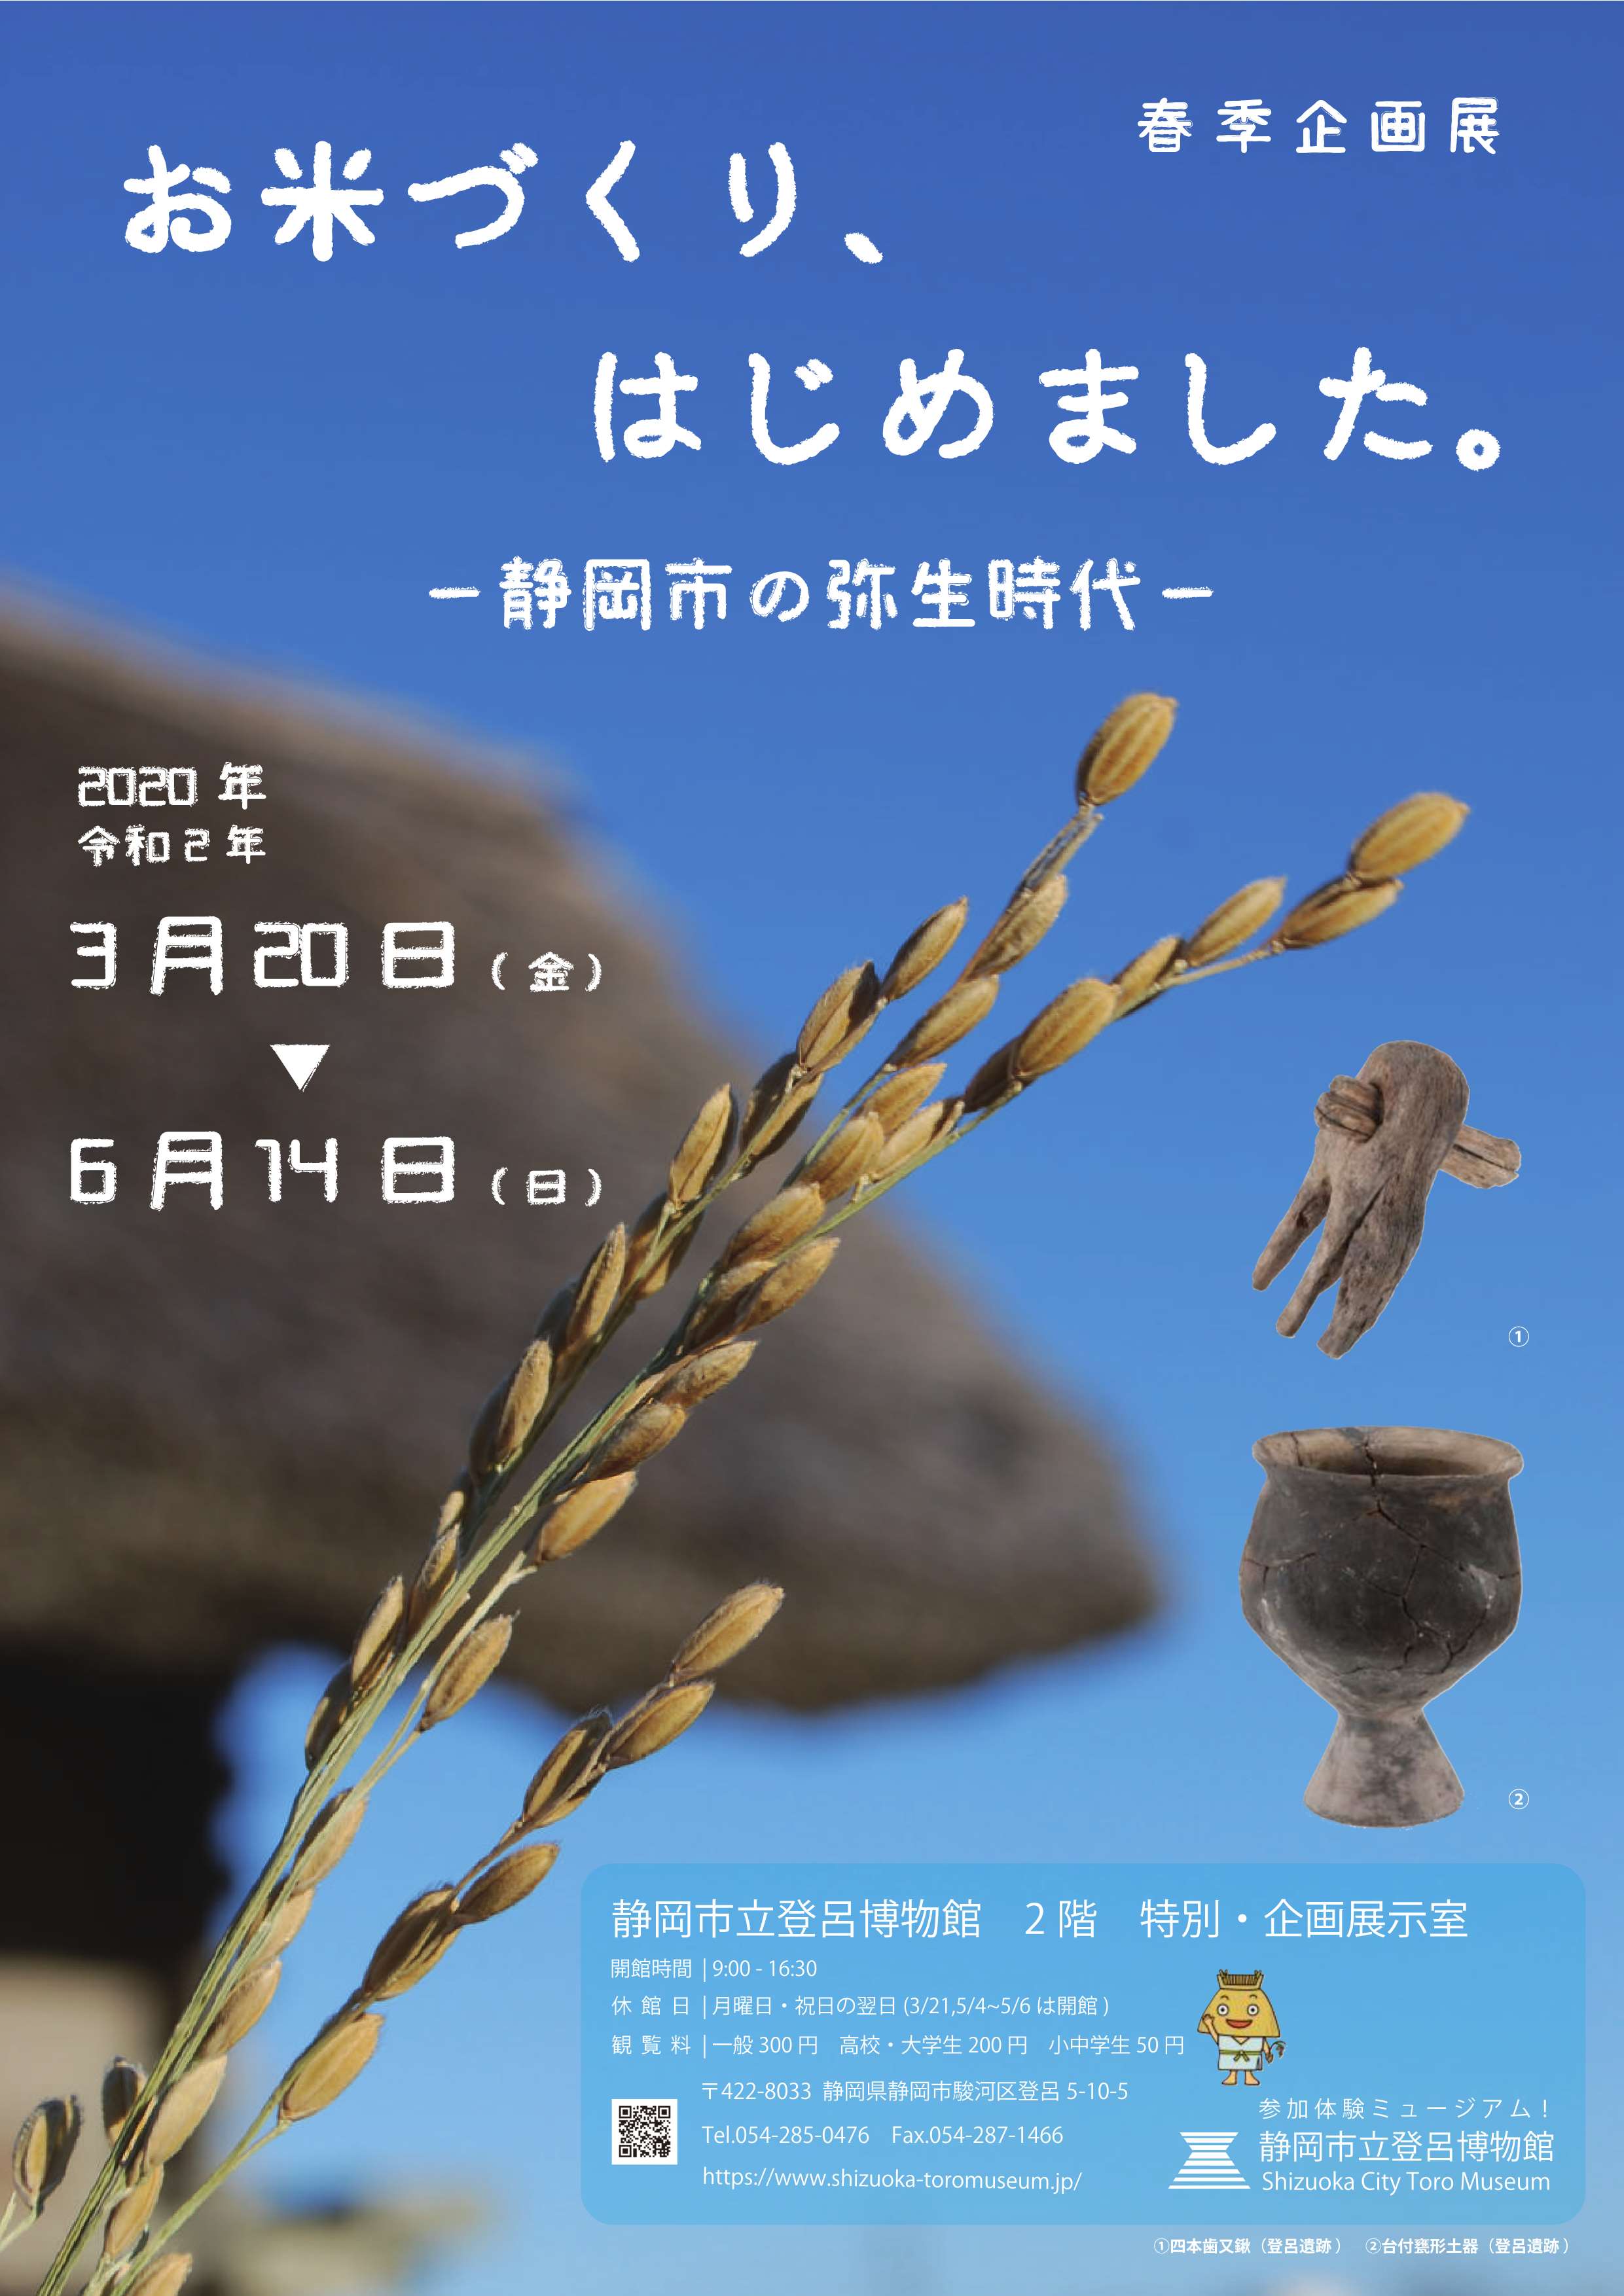 [静岡] 3/20(金)～6/14(日)迄・春季・企画展「お米づくり、はじめました。～静岡市の弥生時代」開催☆彡・静岡市立登呂博物館